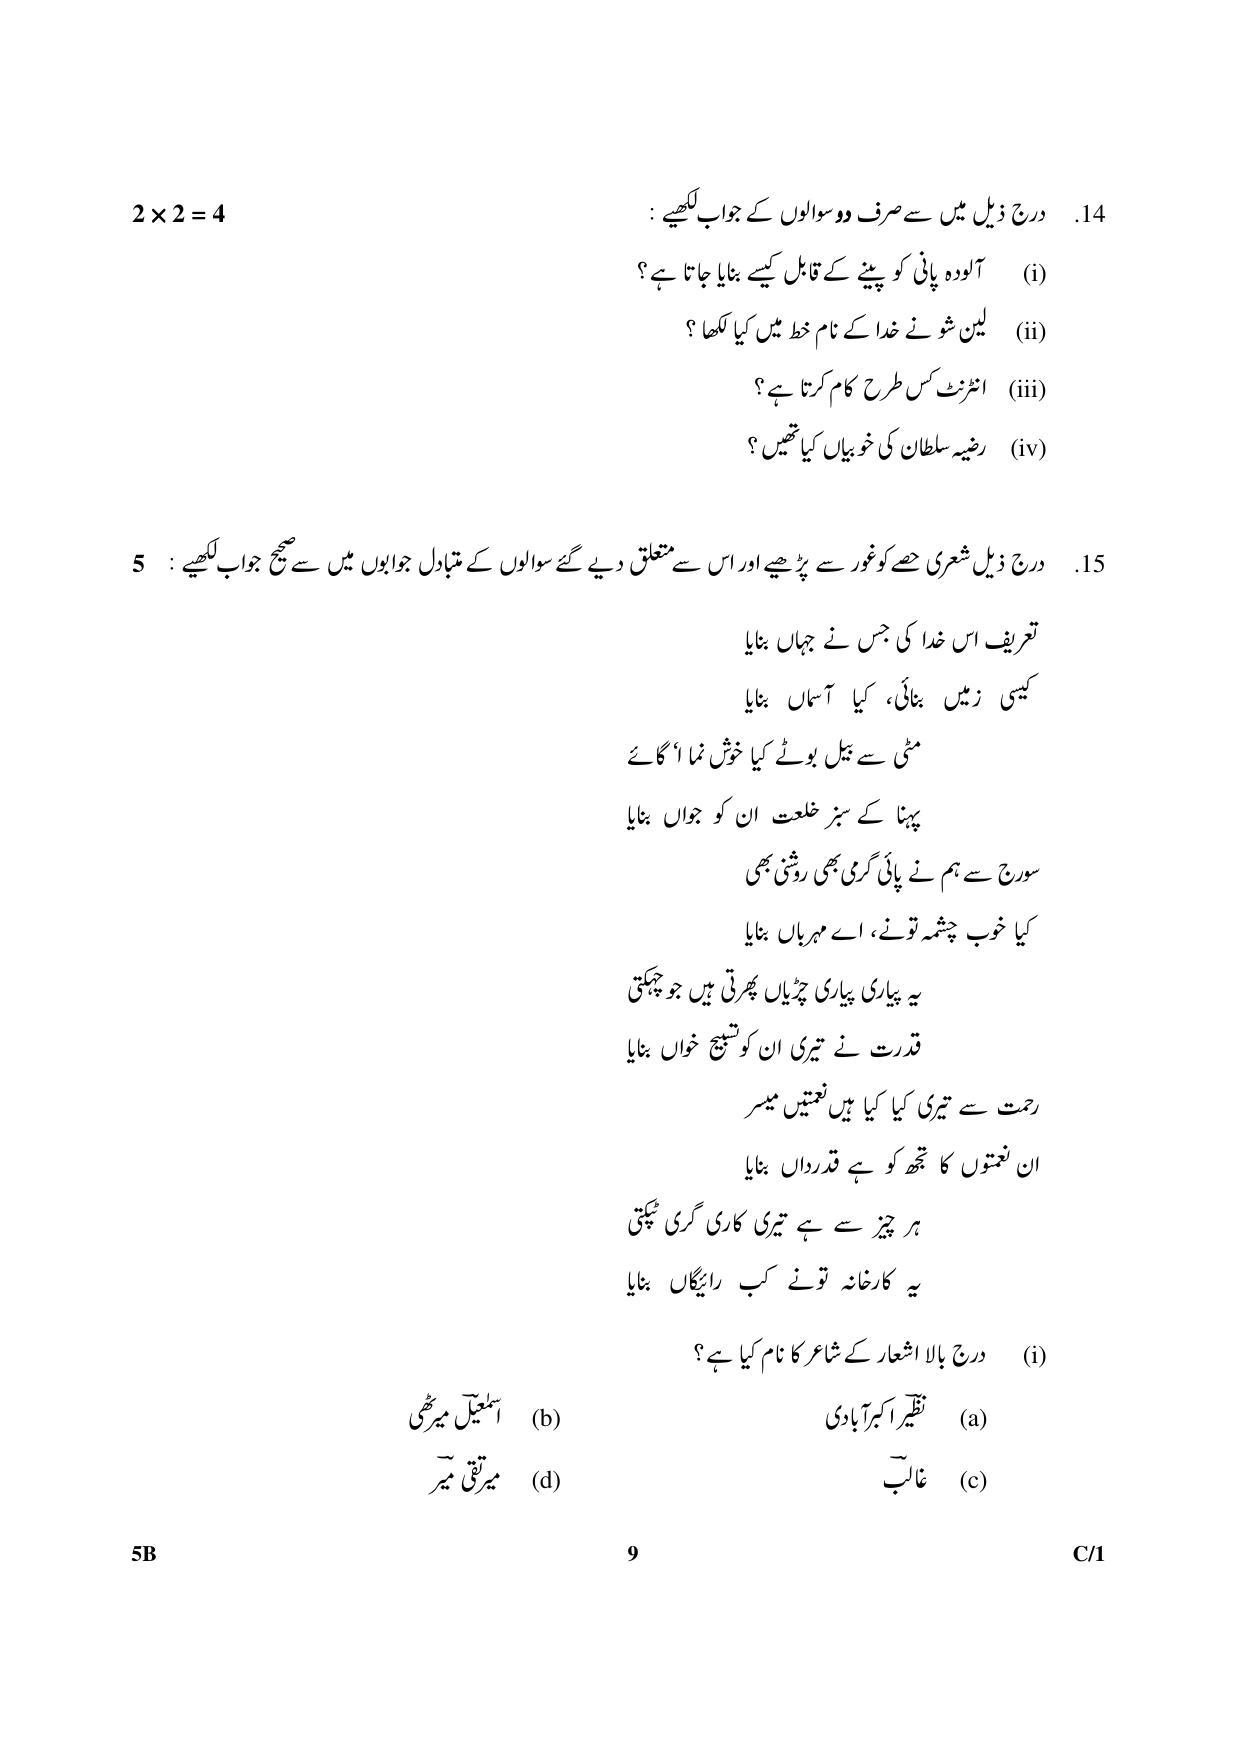 CBSE Class 10 5B Urdu (Course B) 2018 Compartment Question Paper - Page 9